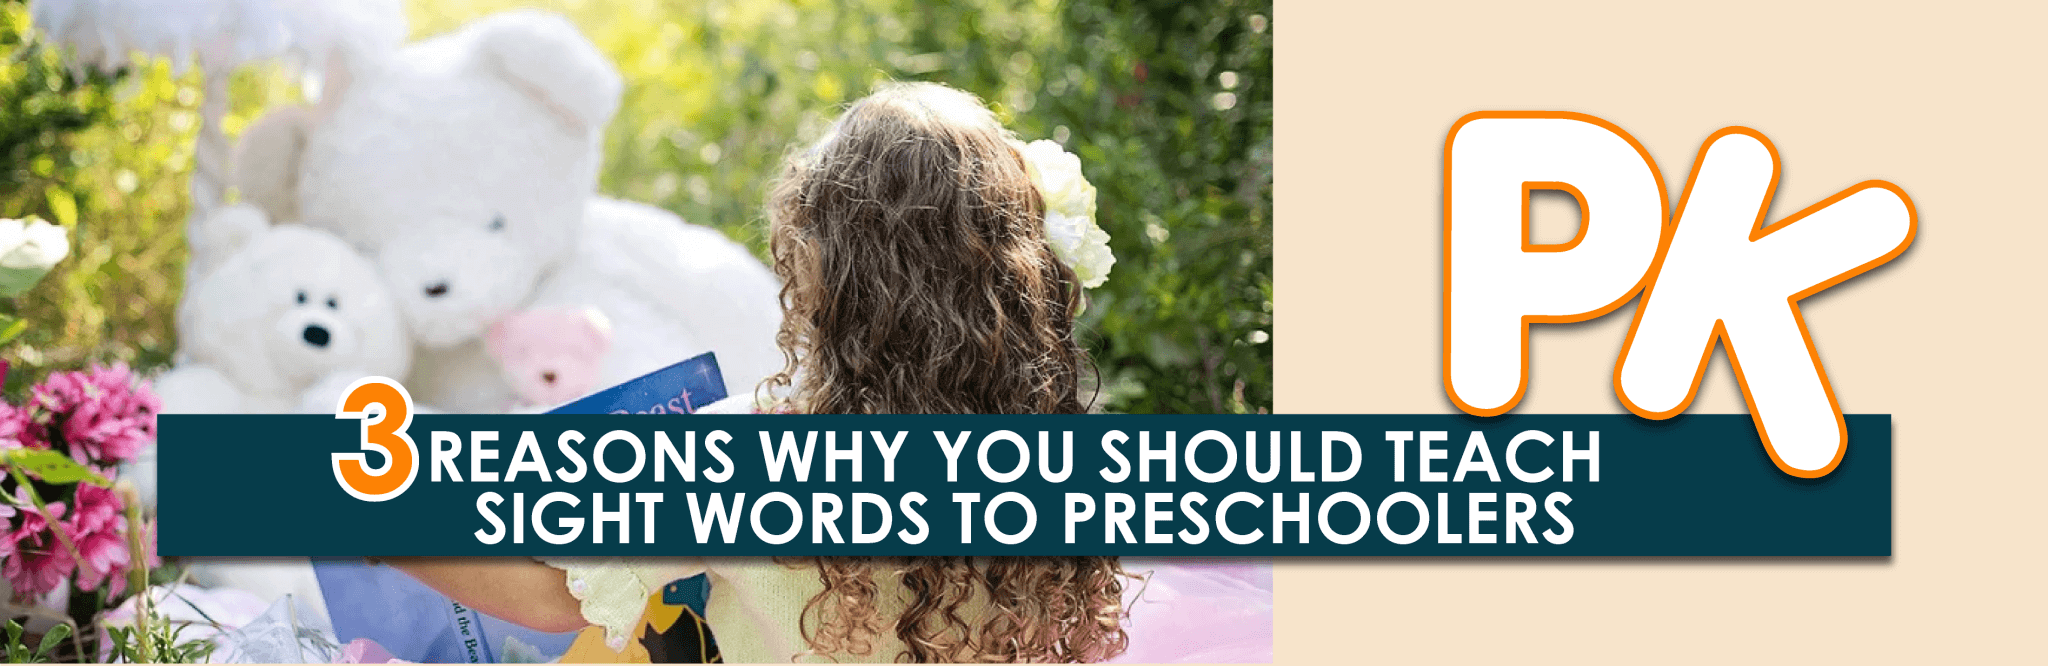 3 razones por las que deberías enseñar palabras de uso frecuente a niños en edad preescolar (¡Jadeo!)